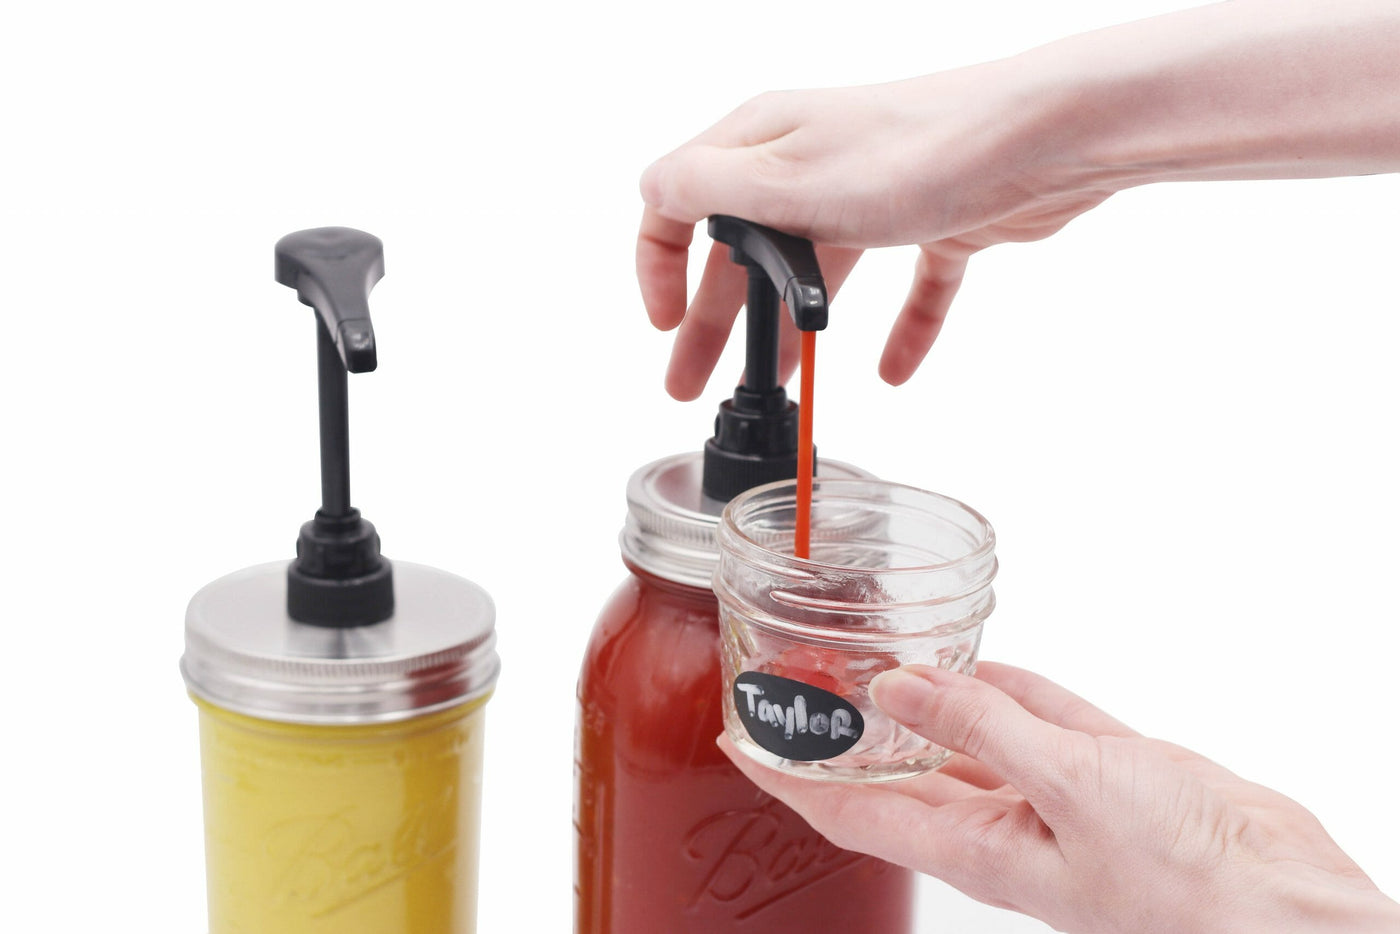 Lemonade dispenser 4 liter - Sustainable lifestyle